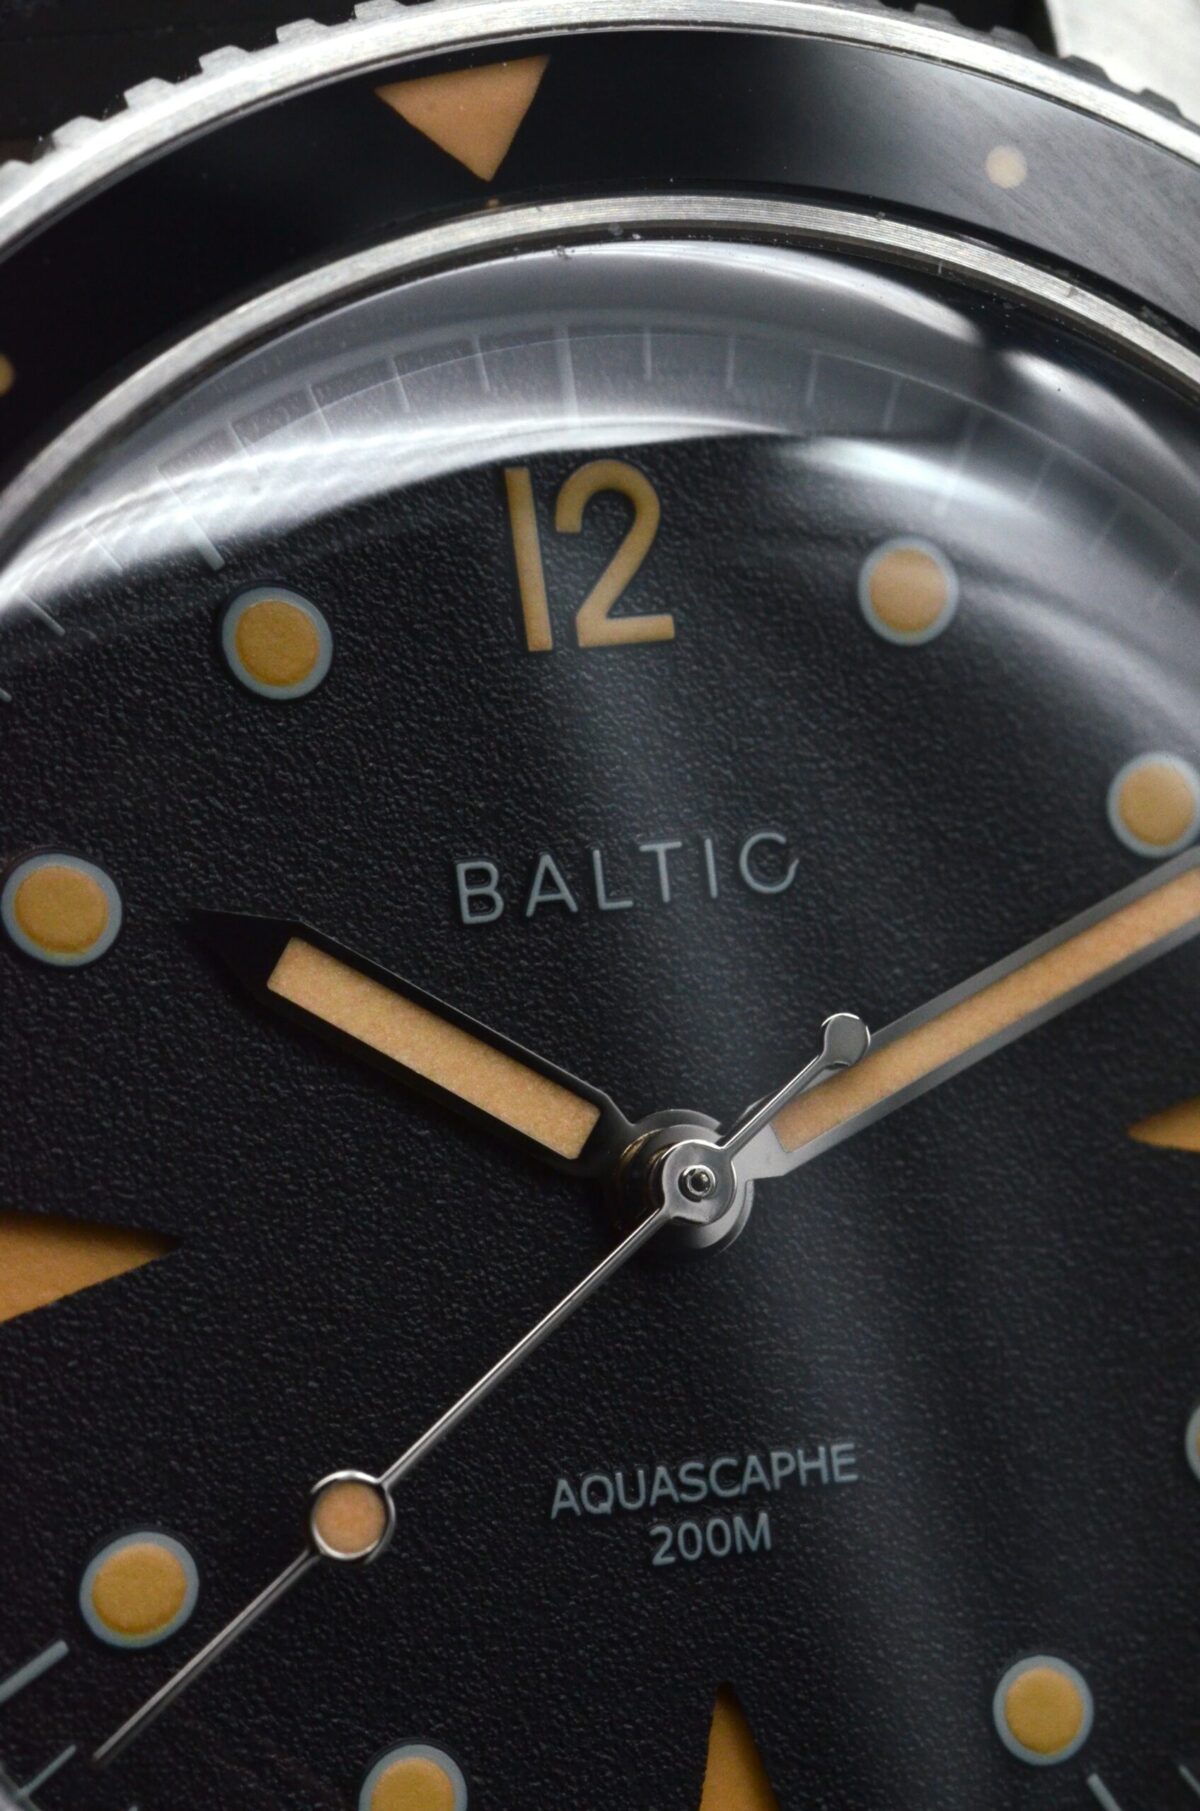 Baltic Black Cream Acquascaphe